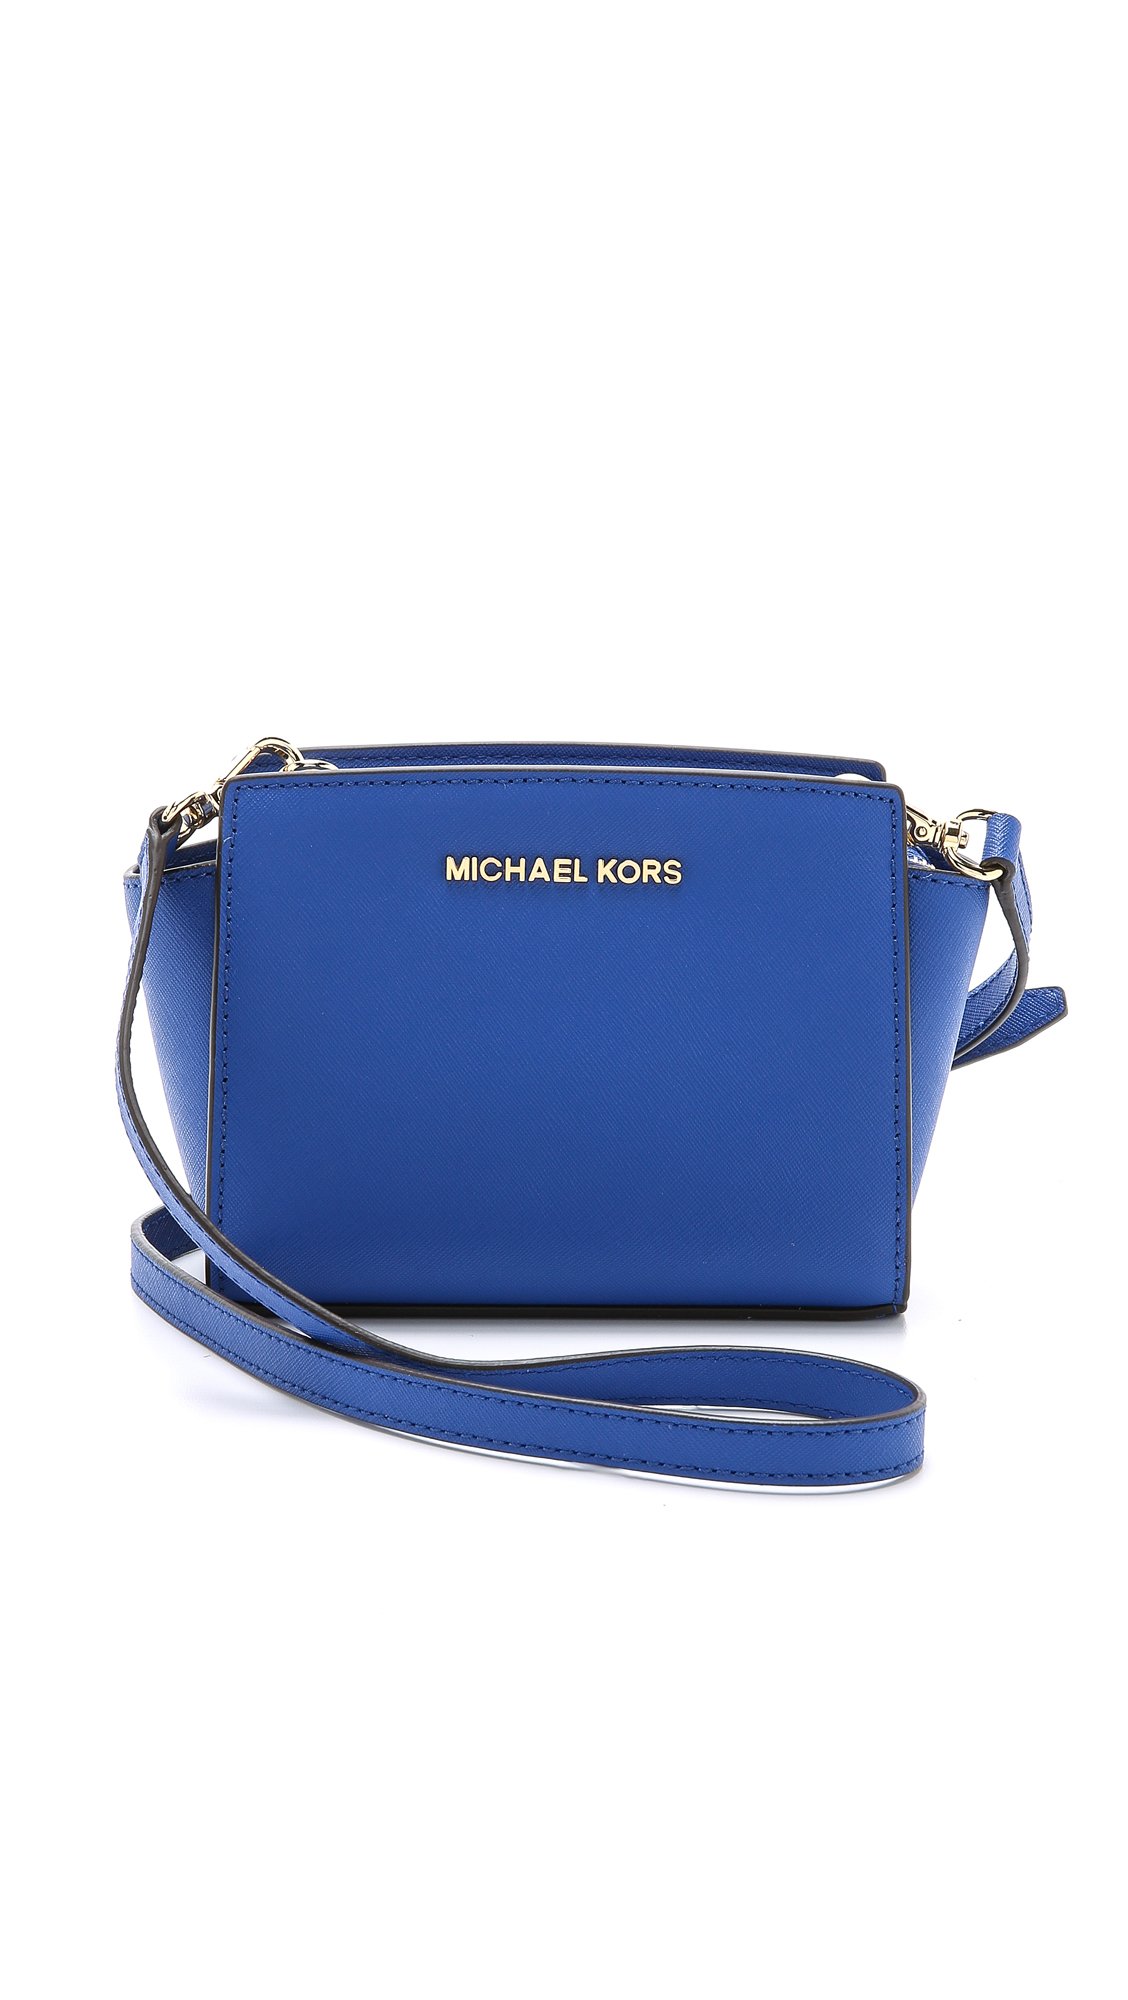 michael kors blue shoulder bag